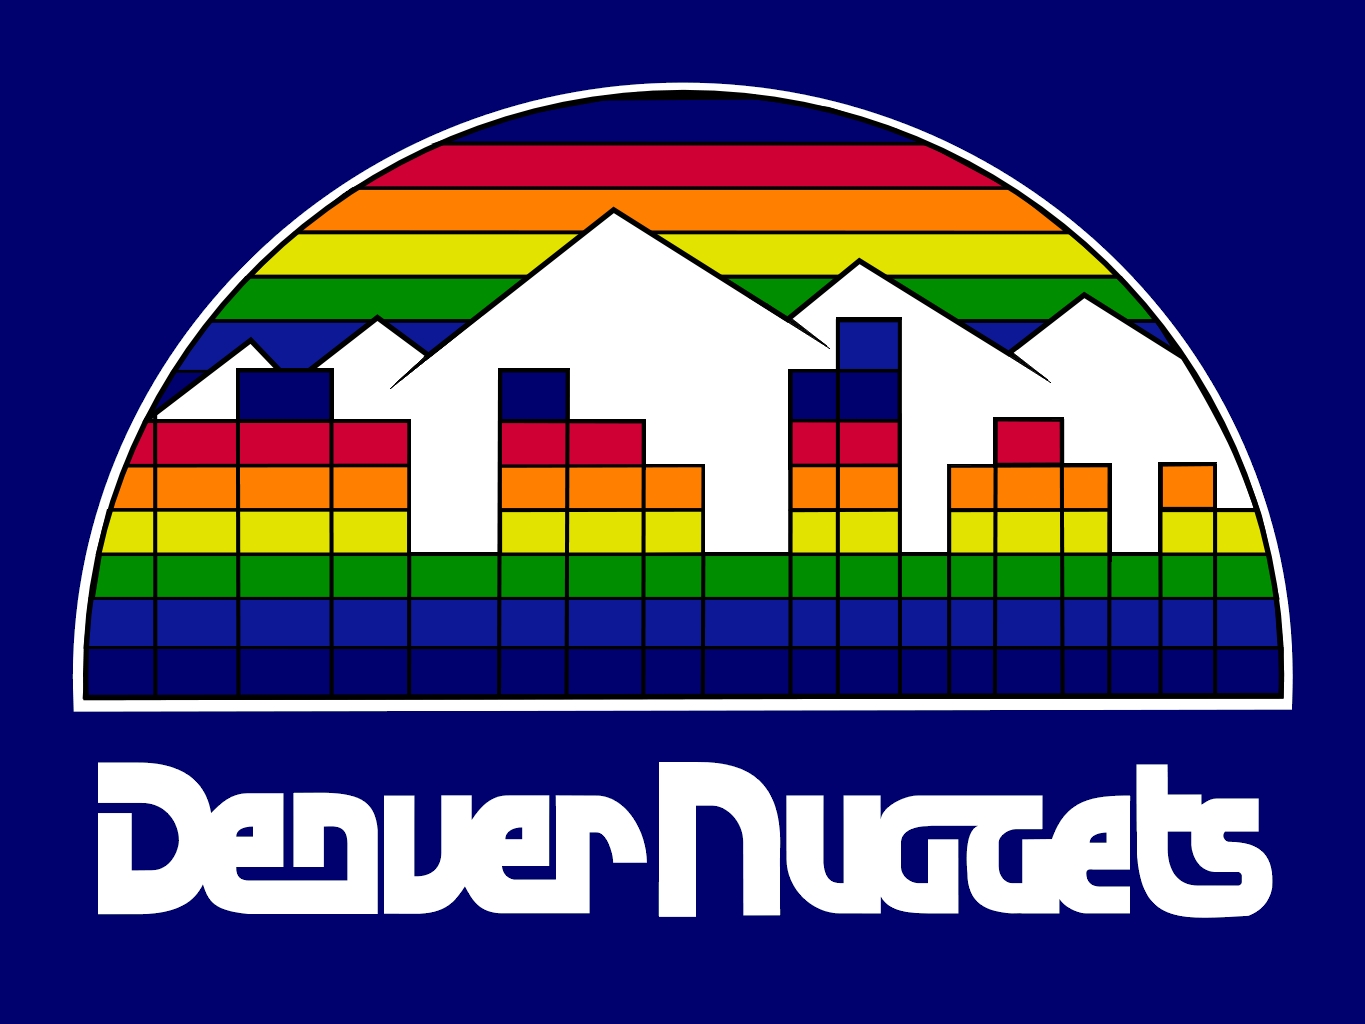 Denver Nuggets Old Logo Cool High Resolution